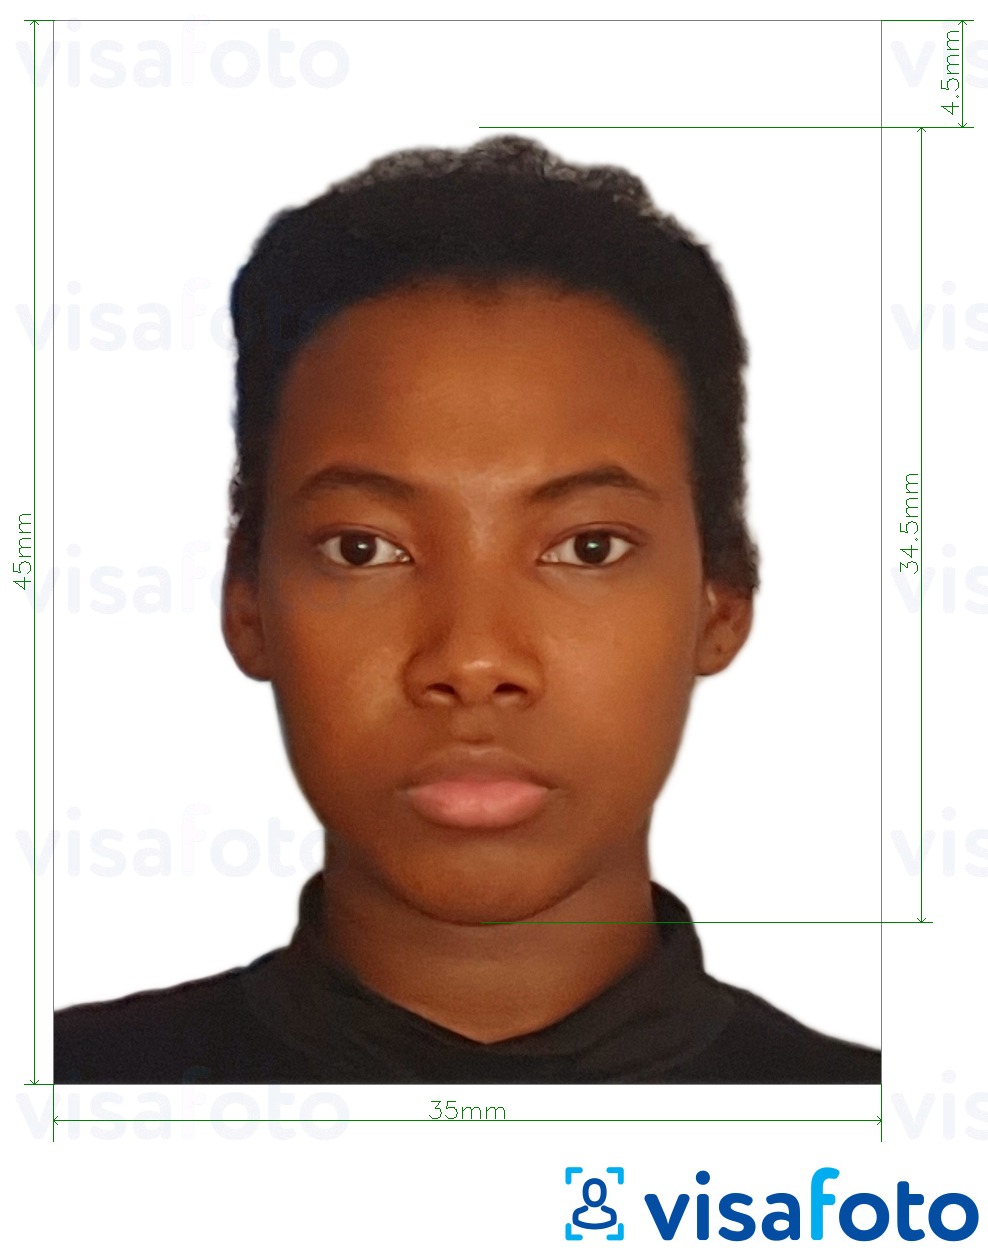 نمونه ی یک عکس برای گذرنامه کنیا 35x45 میلی متر با مشخصات دقیق